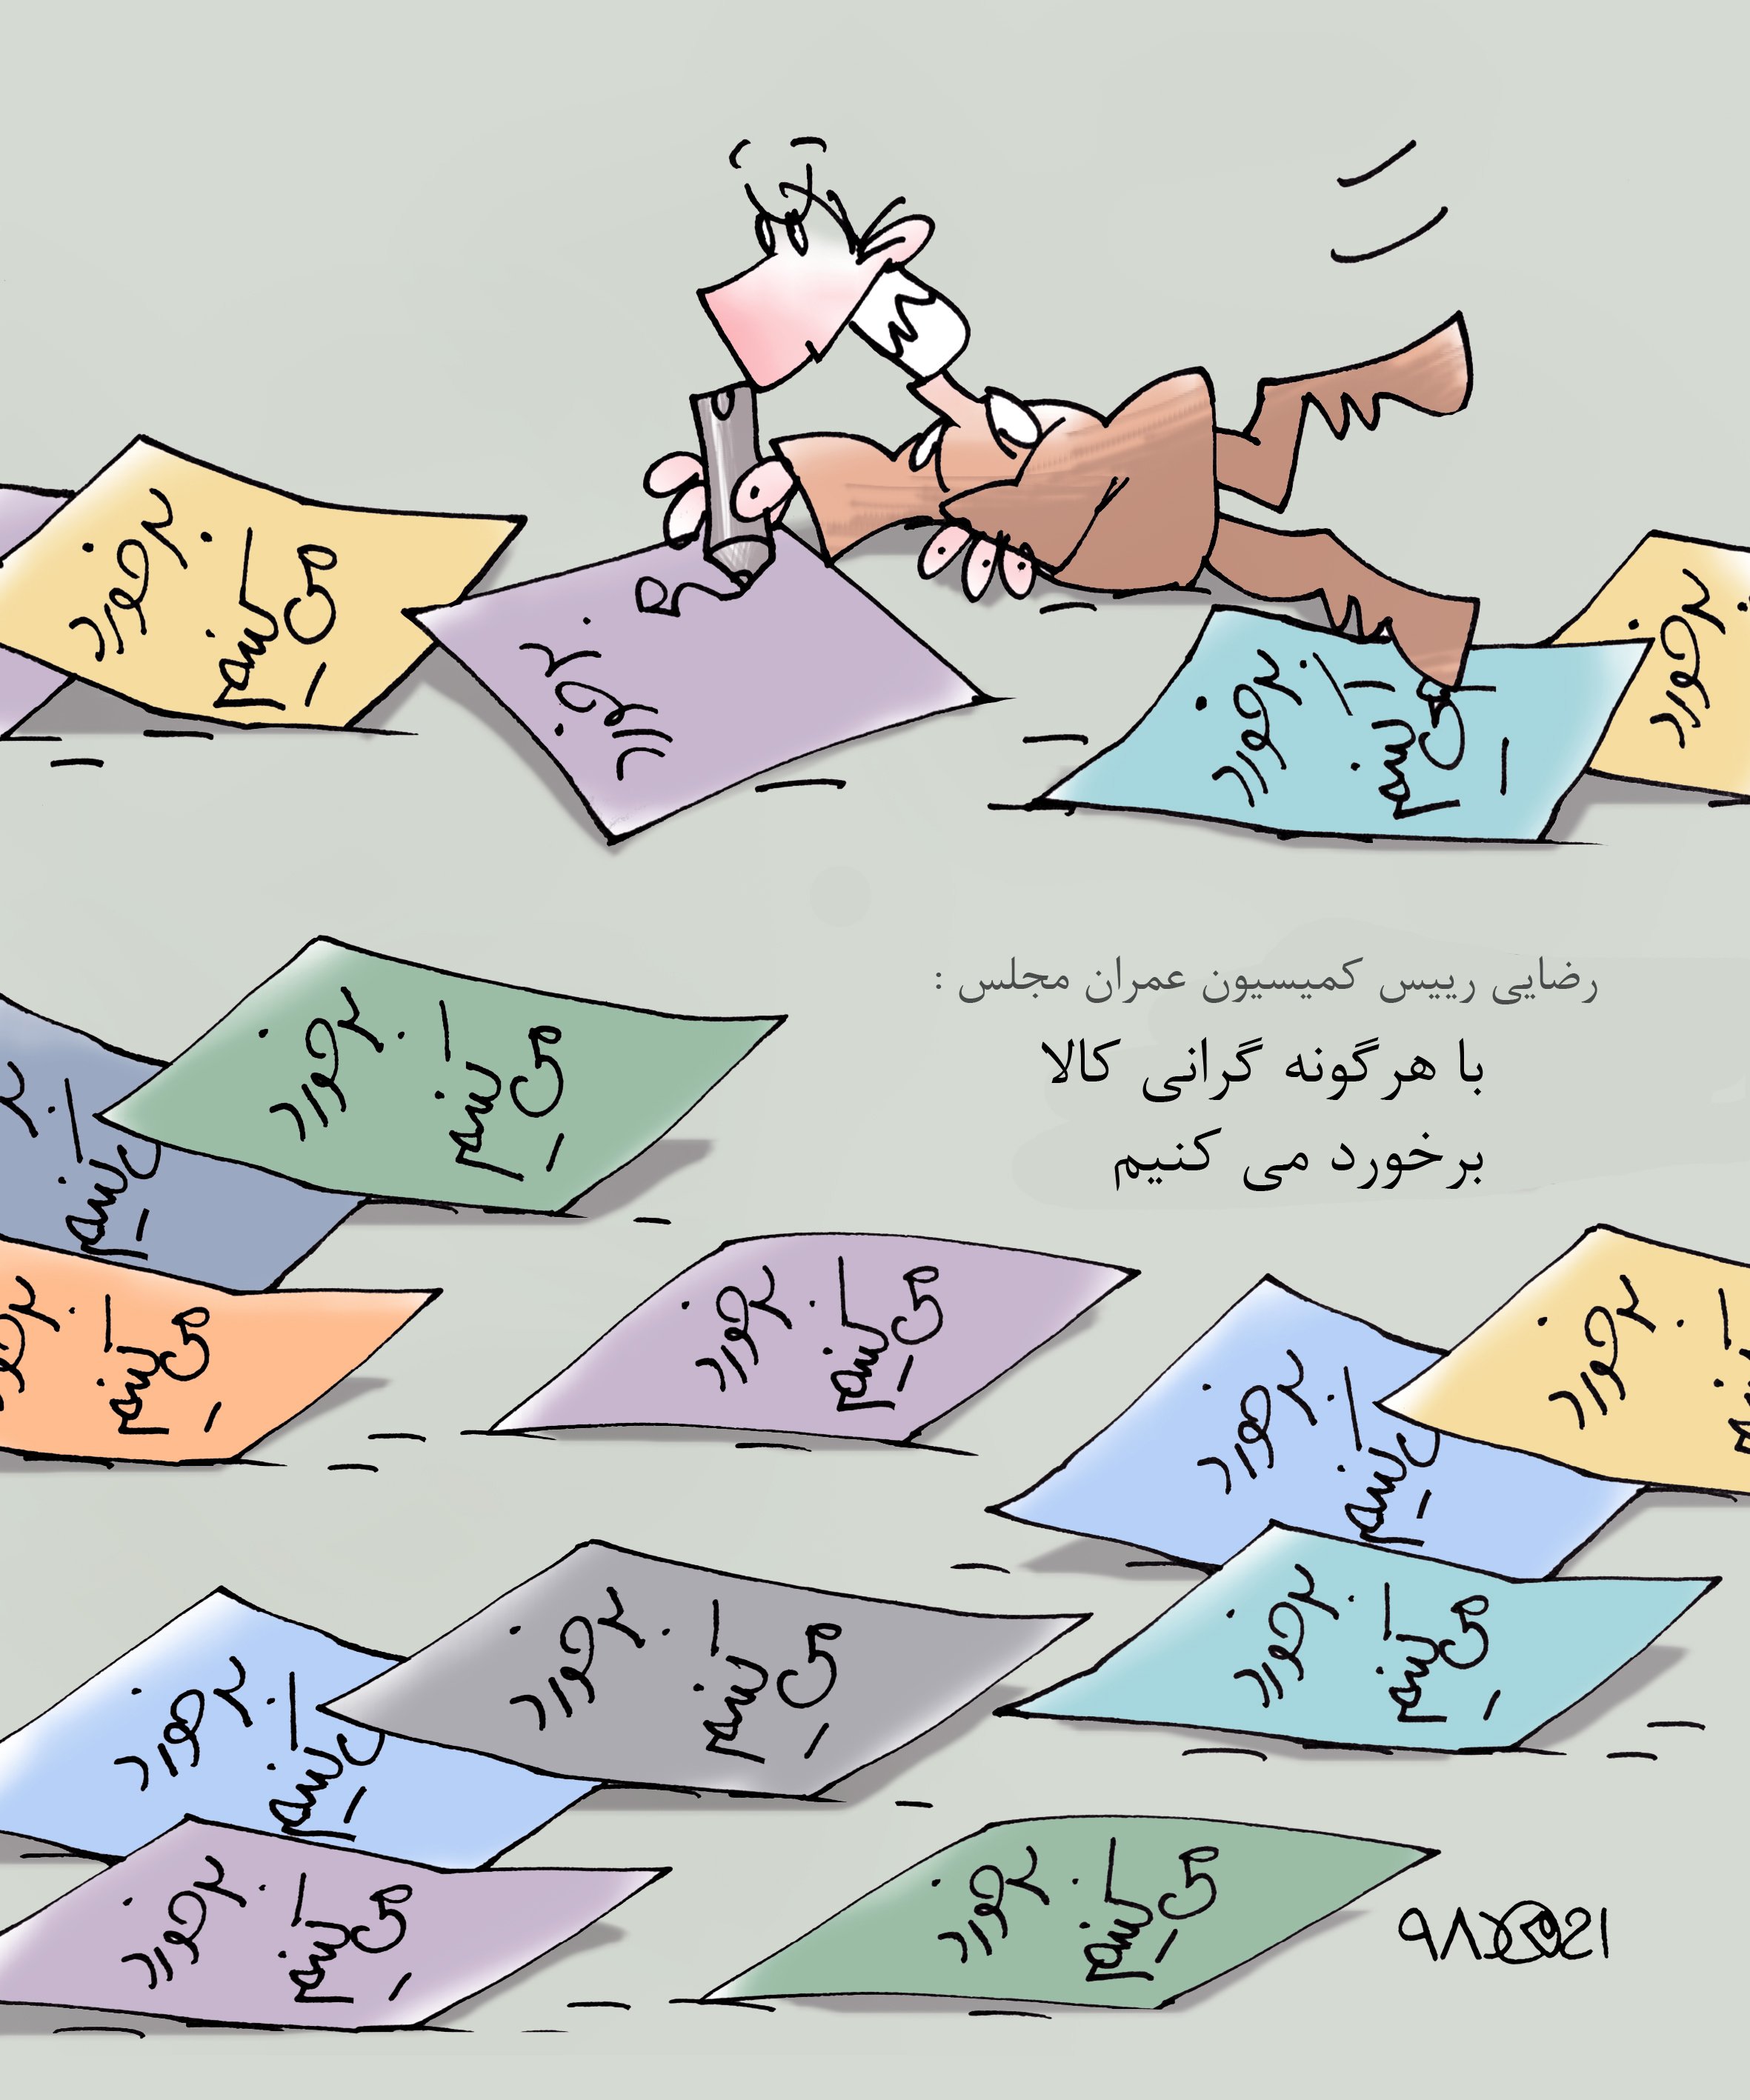 کاریکاتور شیرازه/ به بهانه مردم